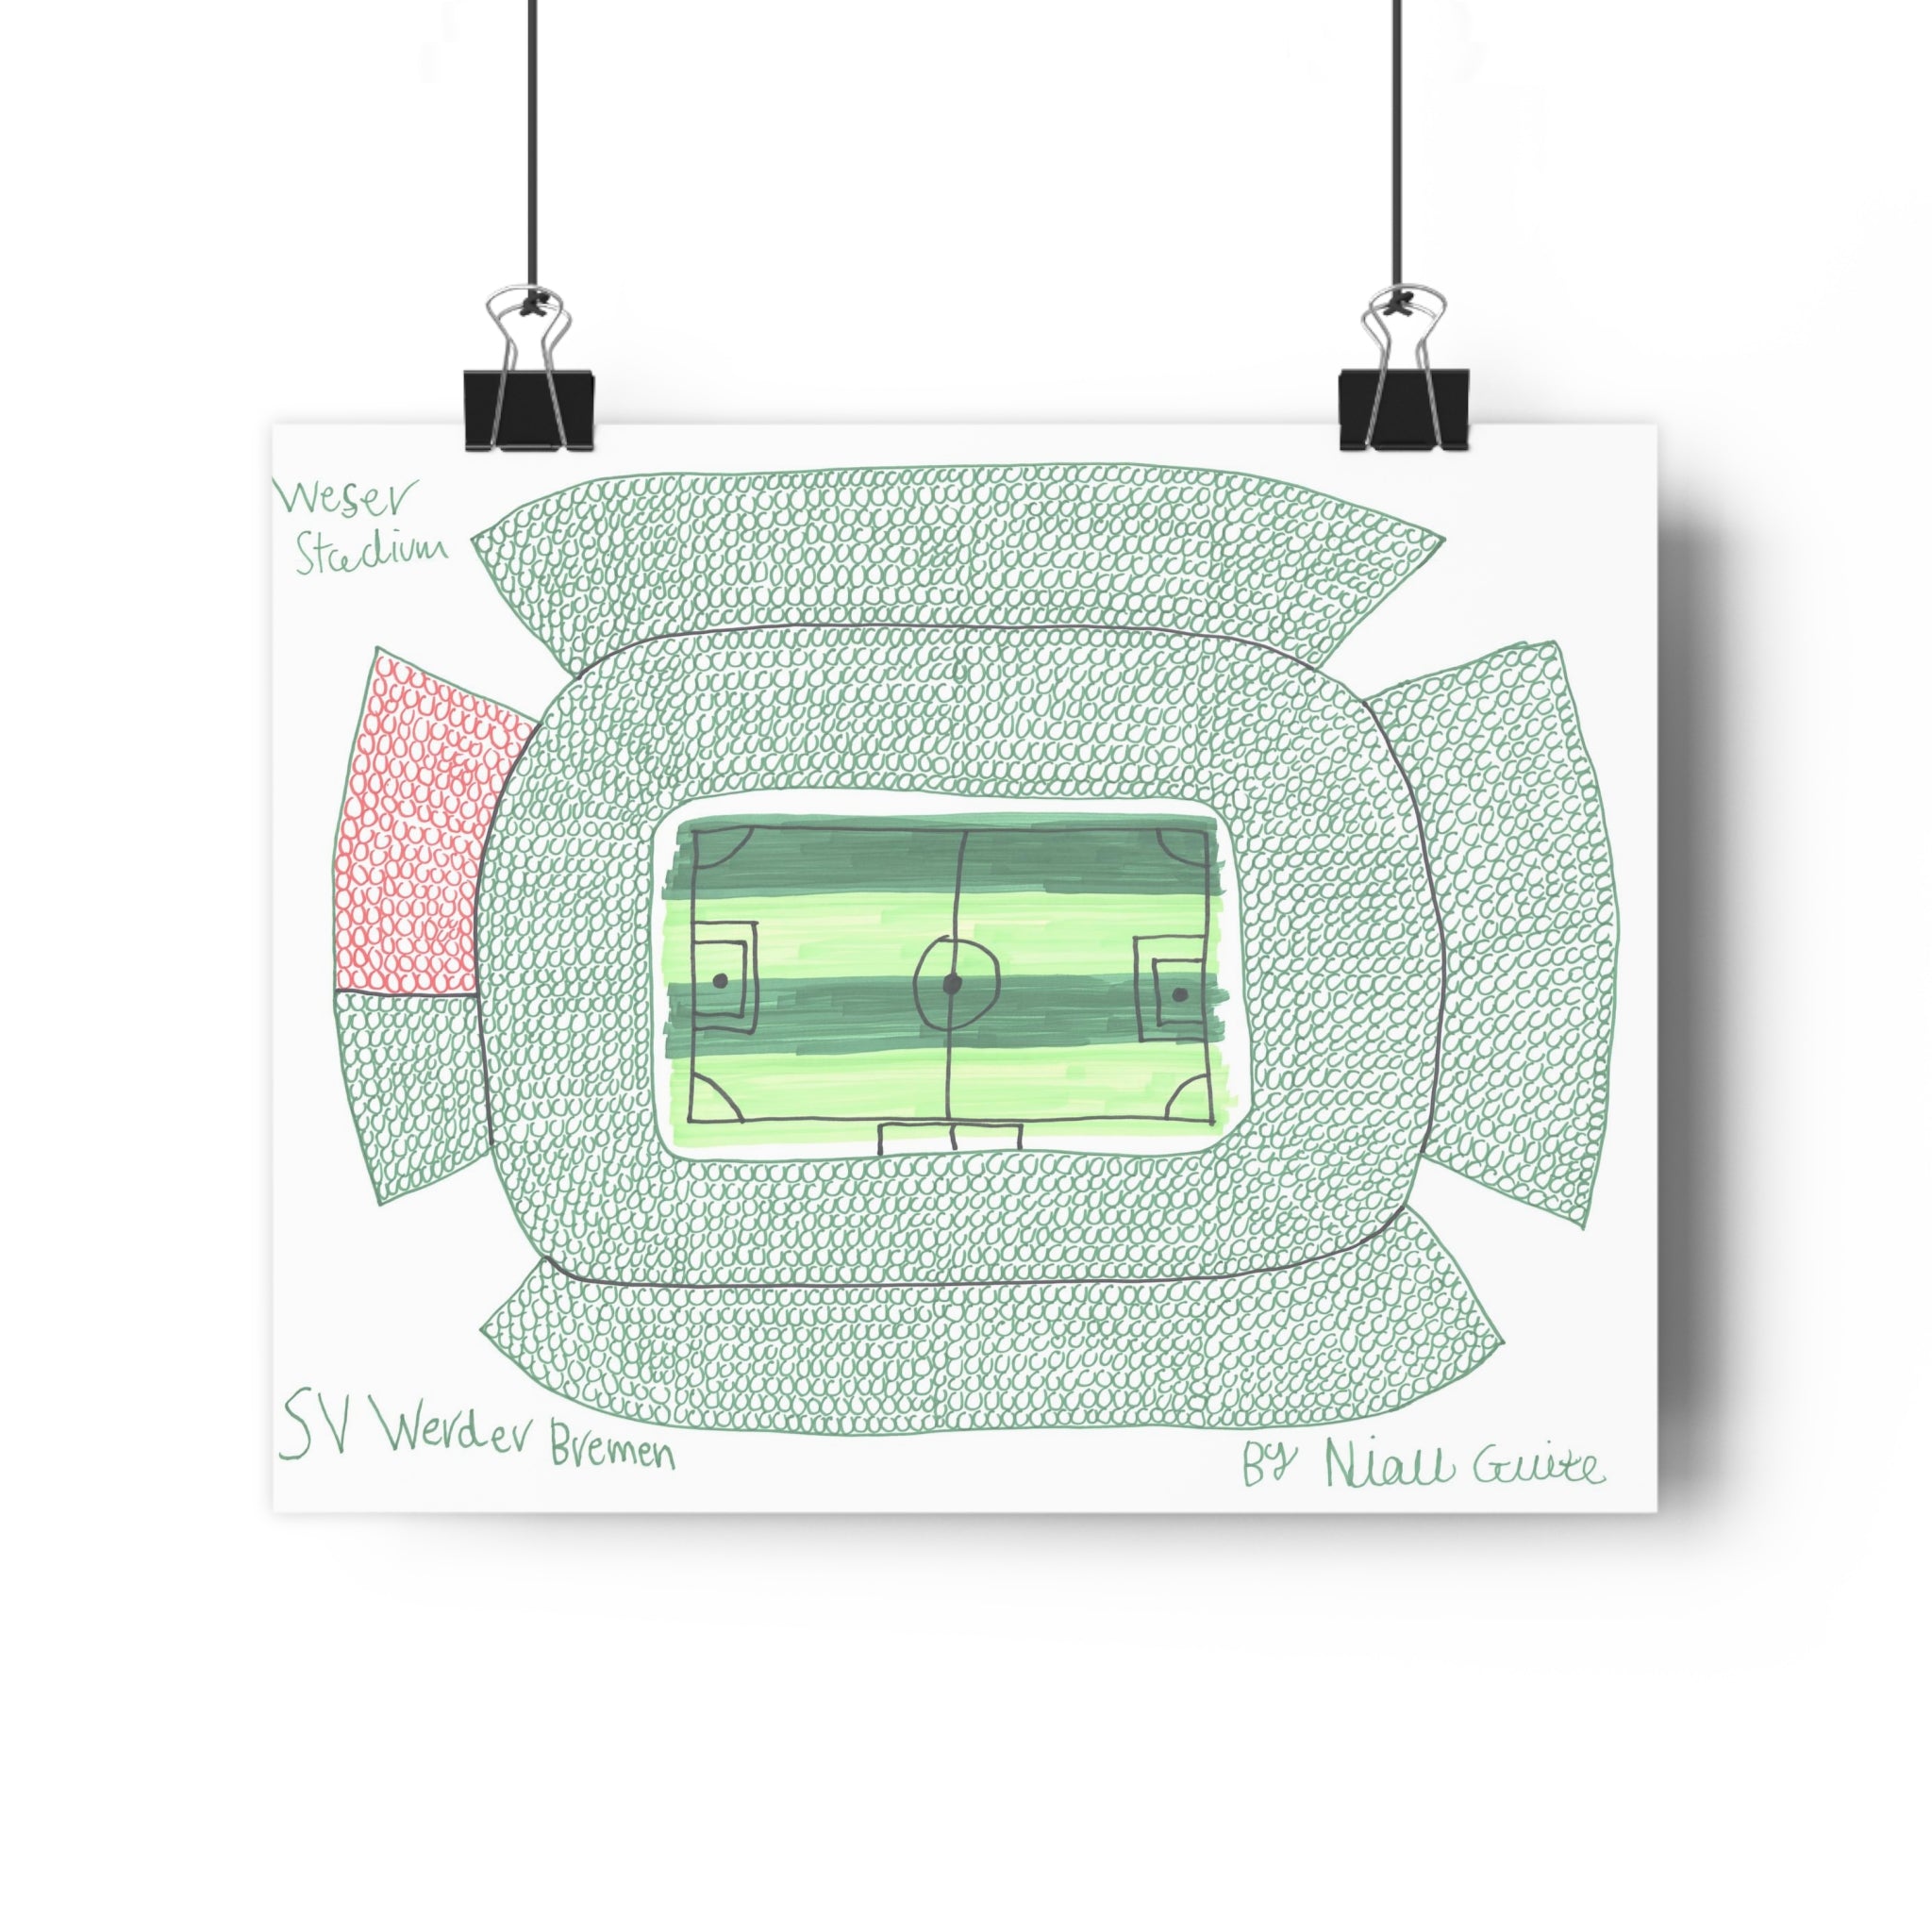 SV Werder Bremen - Weser Stadium - Print